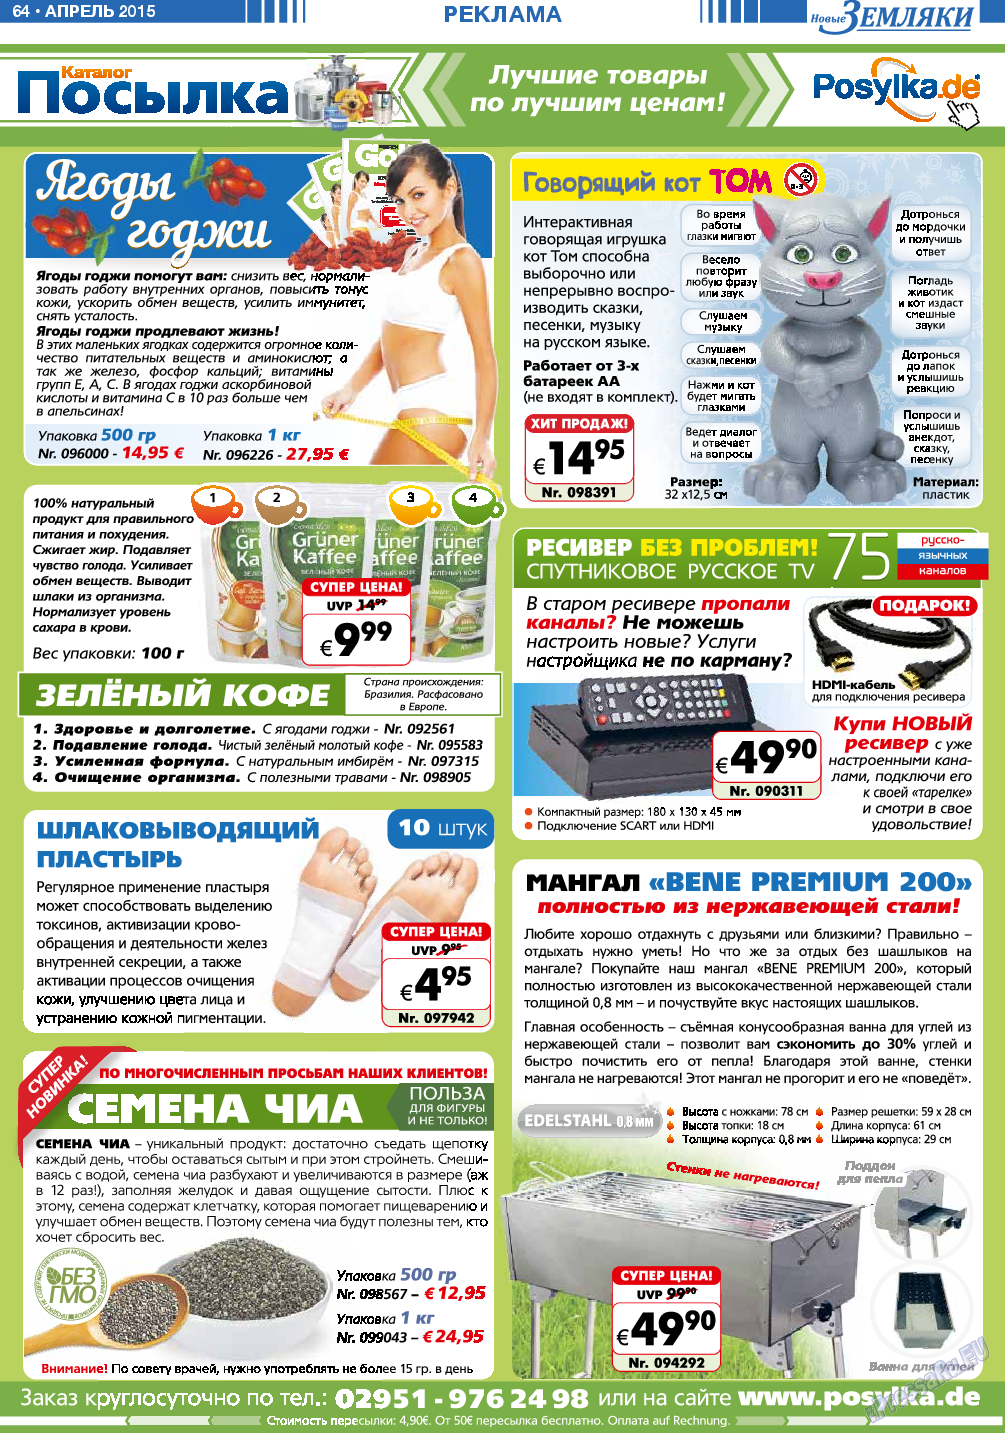 Новые Земляки (газета). 2015 год, номер 4, стр. 64